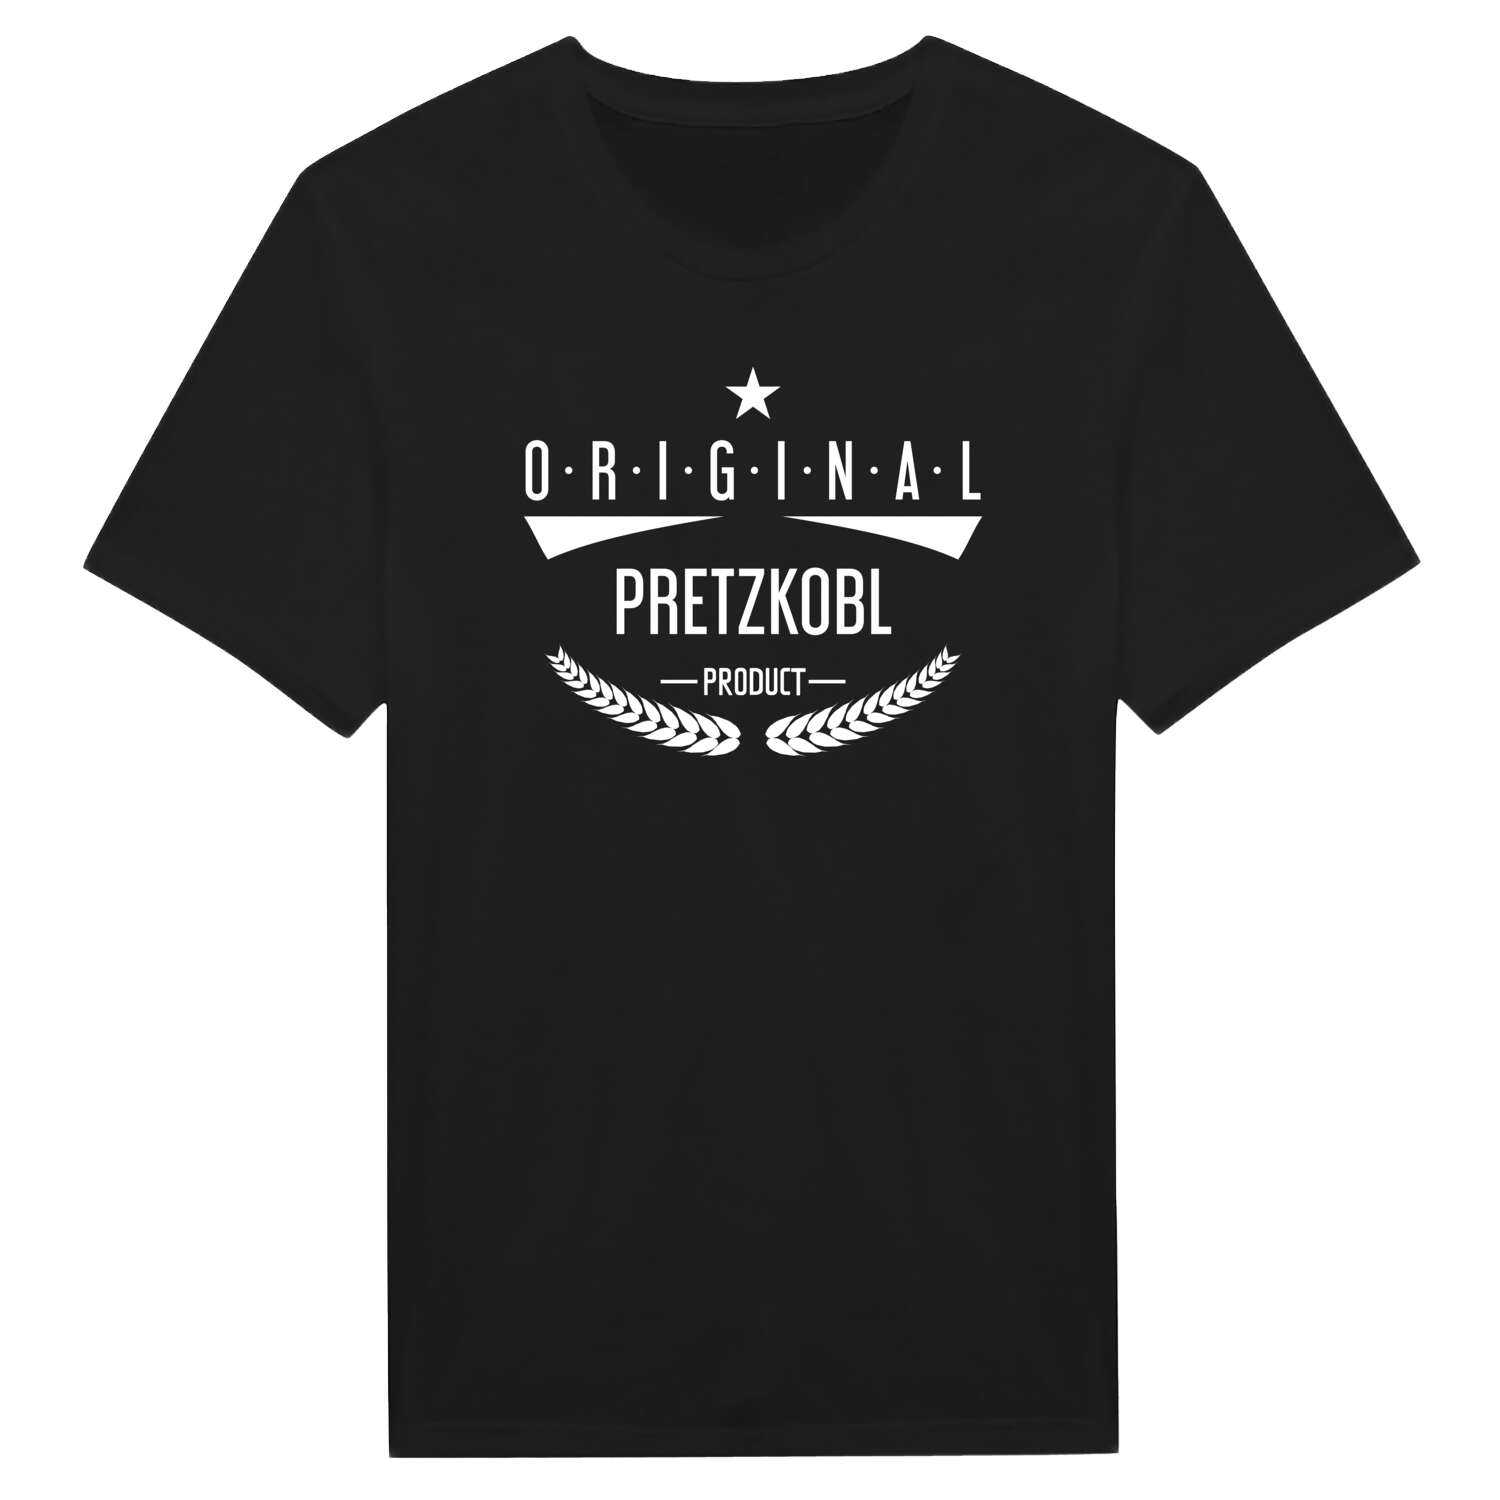 Pretzkobl T-Shirt »Original Product«